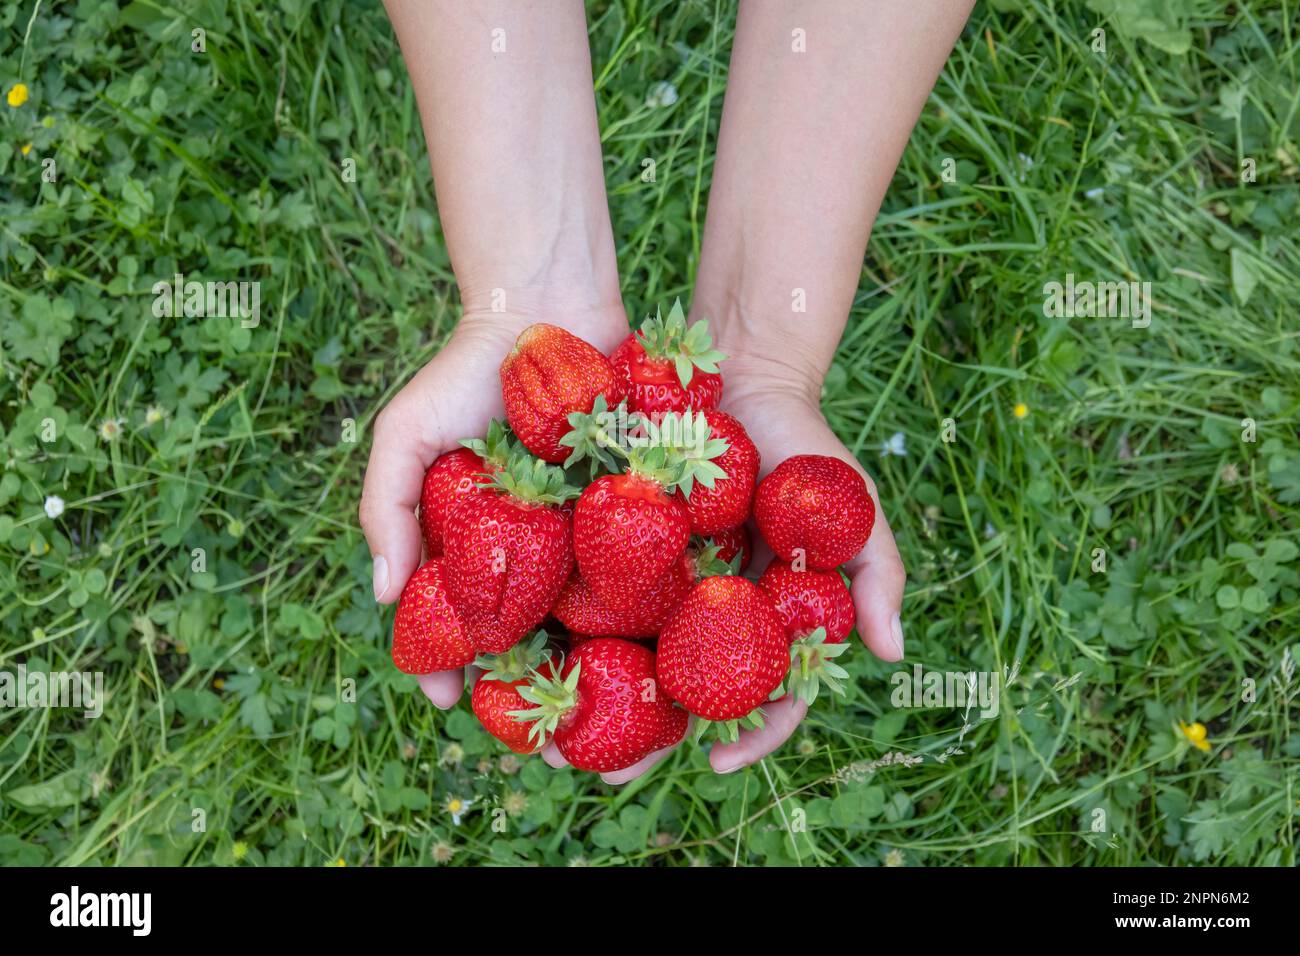 Mains tenant une récolte de grosses fraises fraîches. Poignée de baies rouges fraîches Banque D'Images